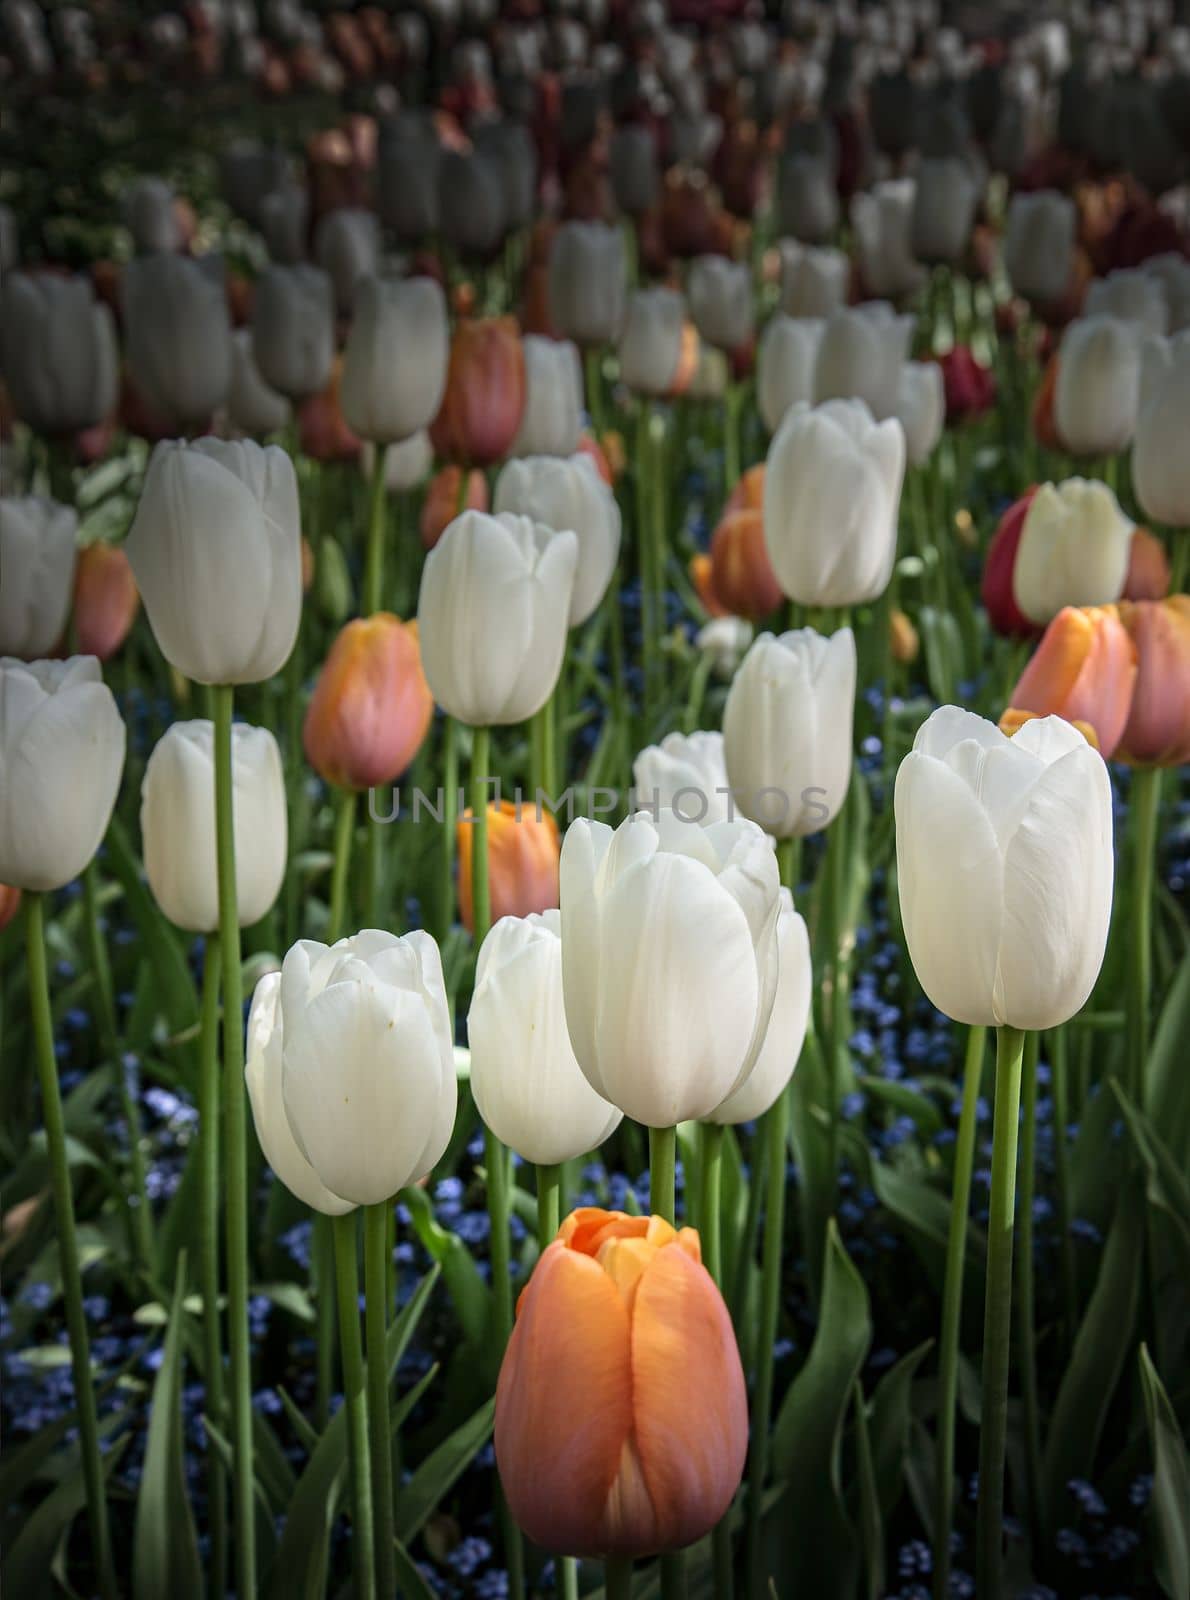 Delicate Spring flowering tulips in bloom